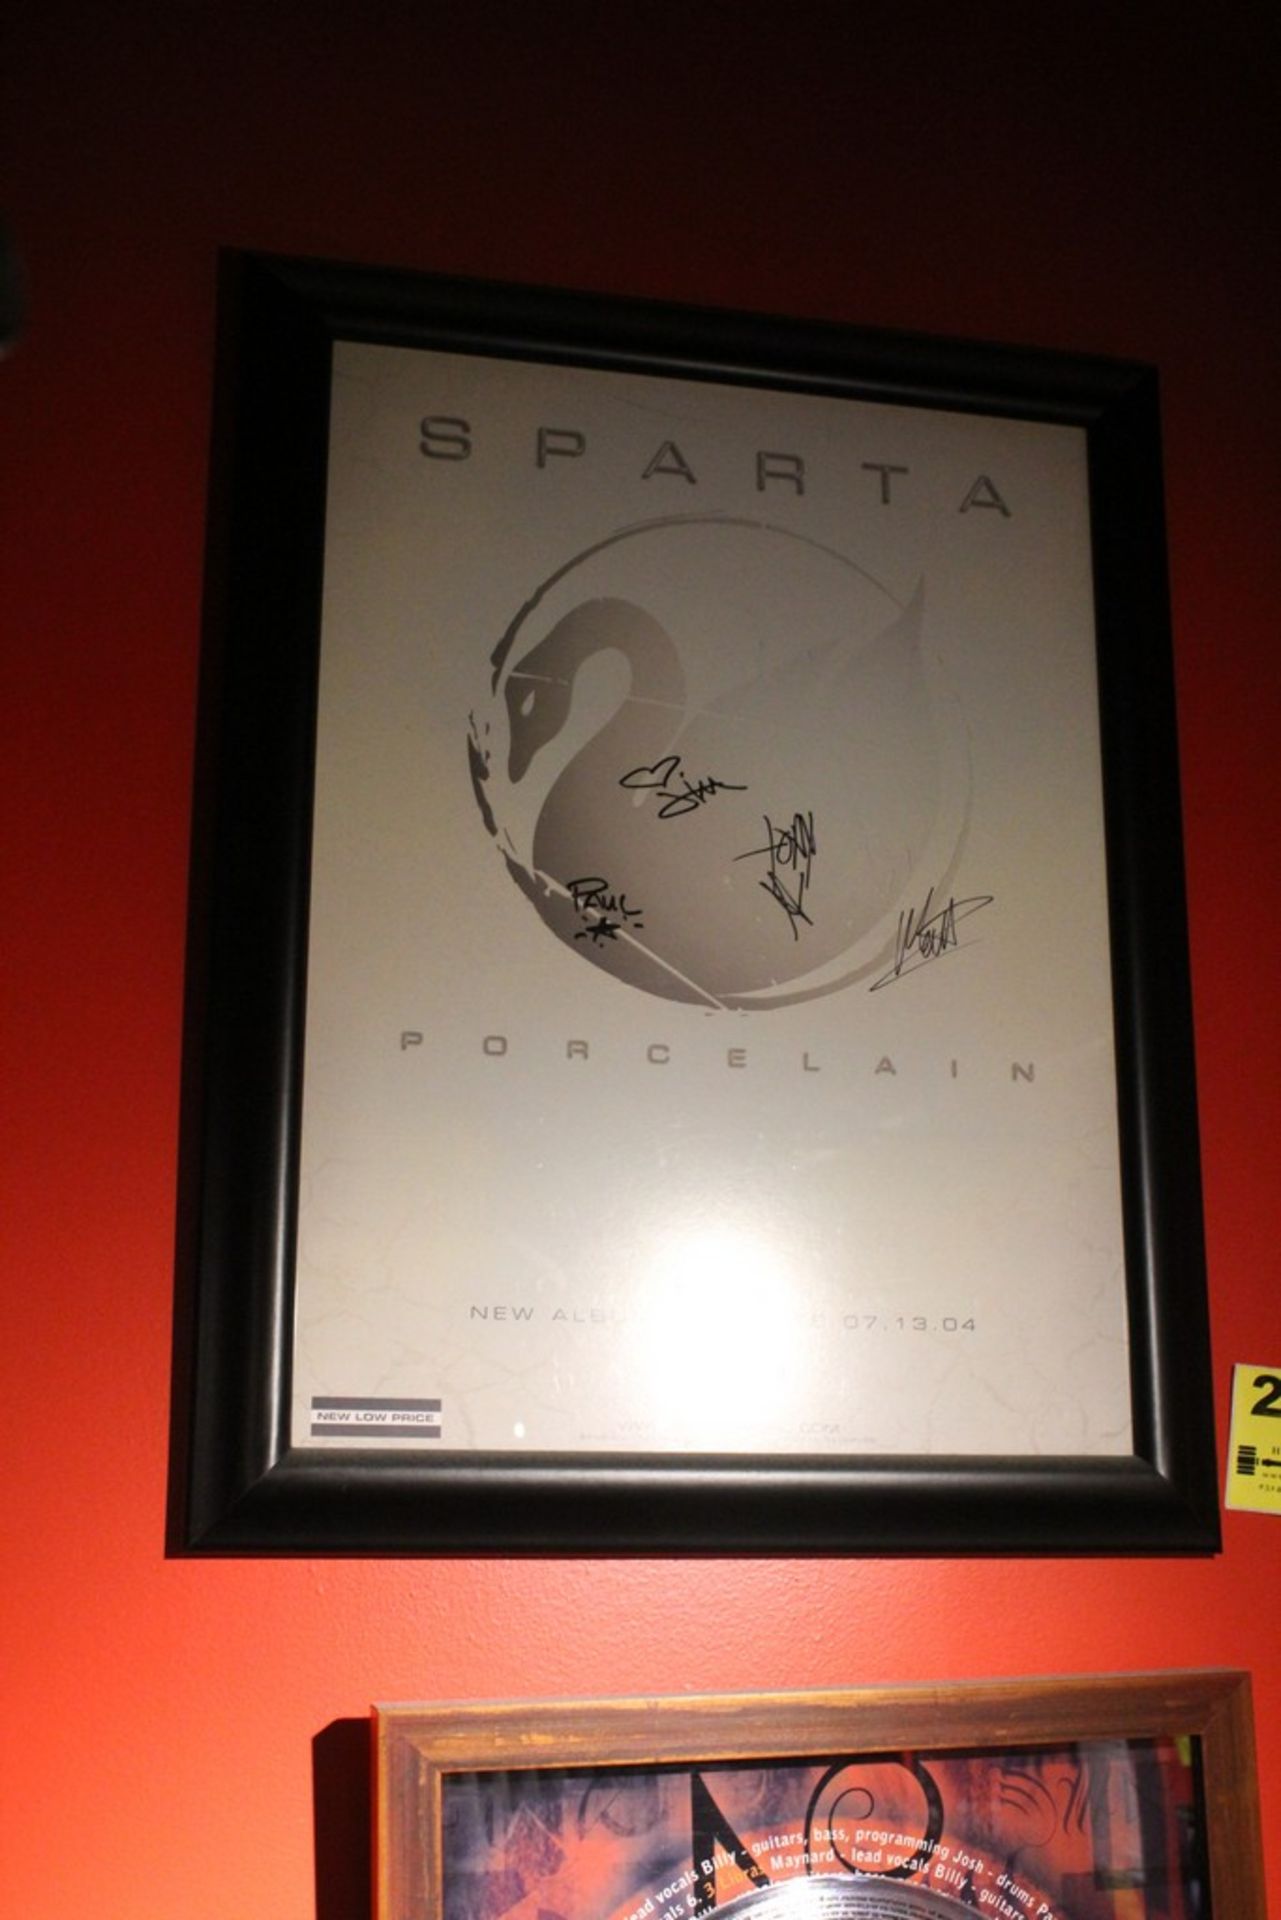 Sparta "Porcelain" Signed Poster